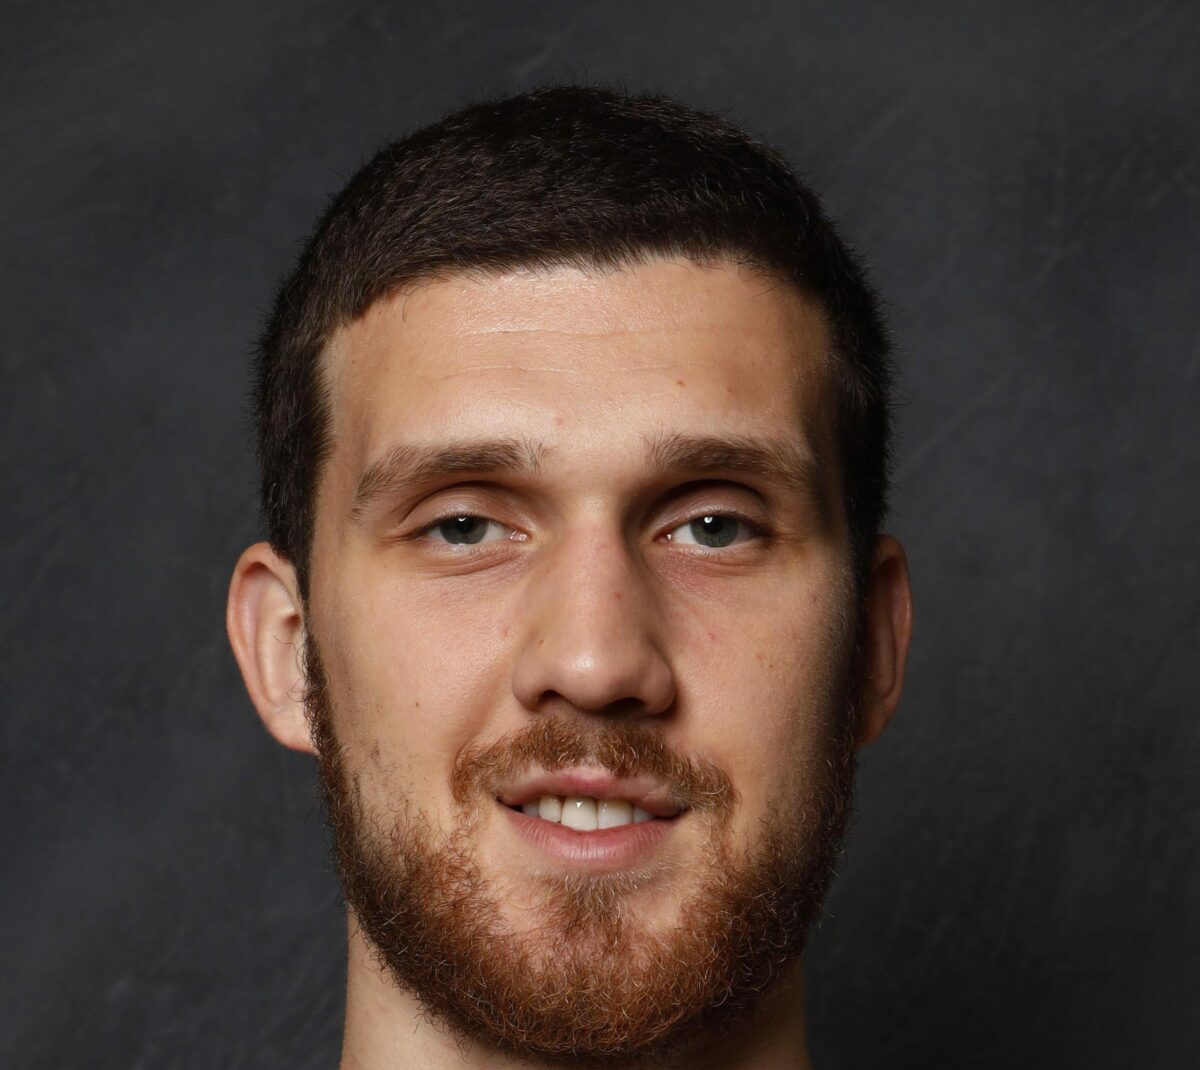 How does the Svi Mykhailiuk signing fit into the Boston Celtics’ title hopes?